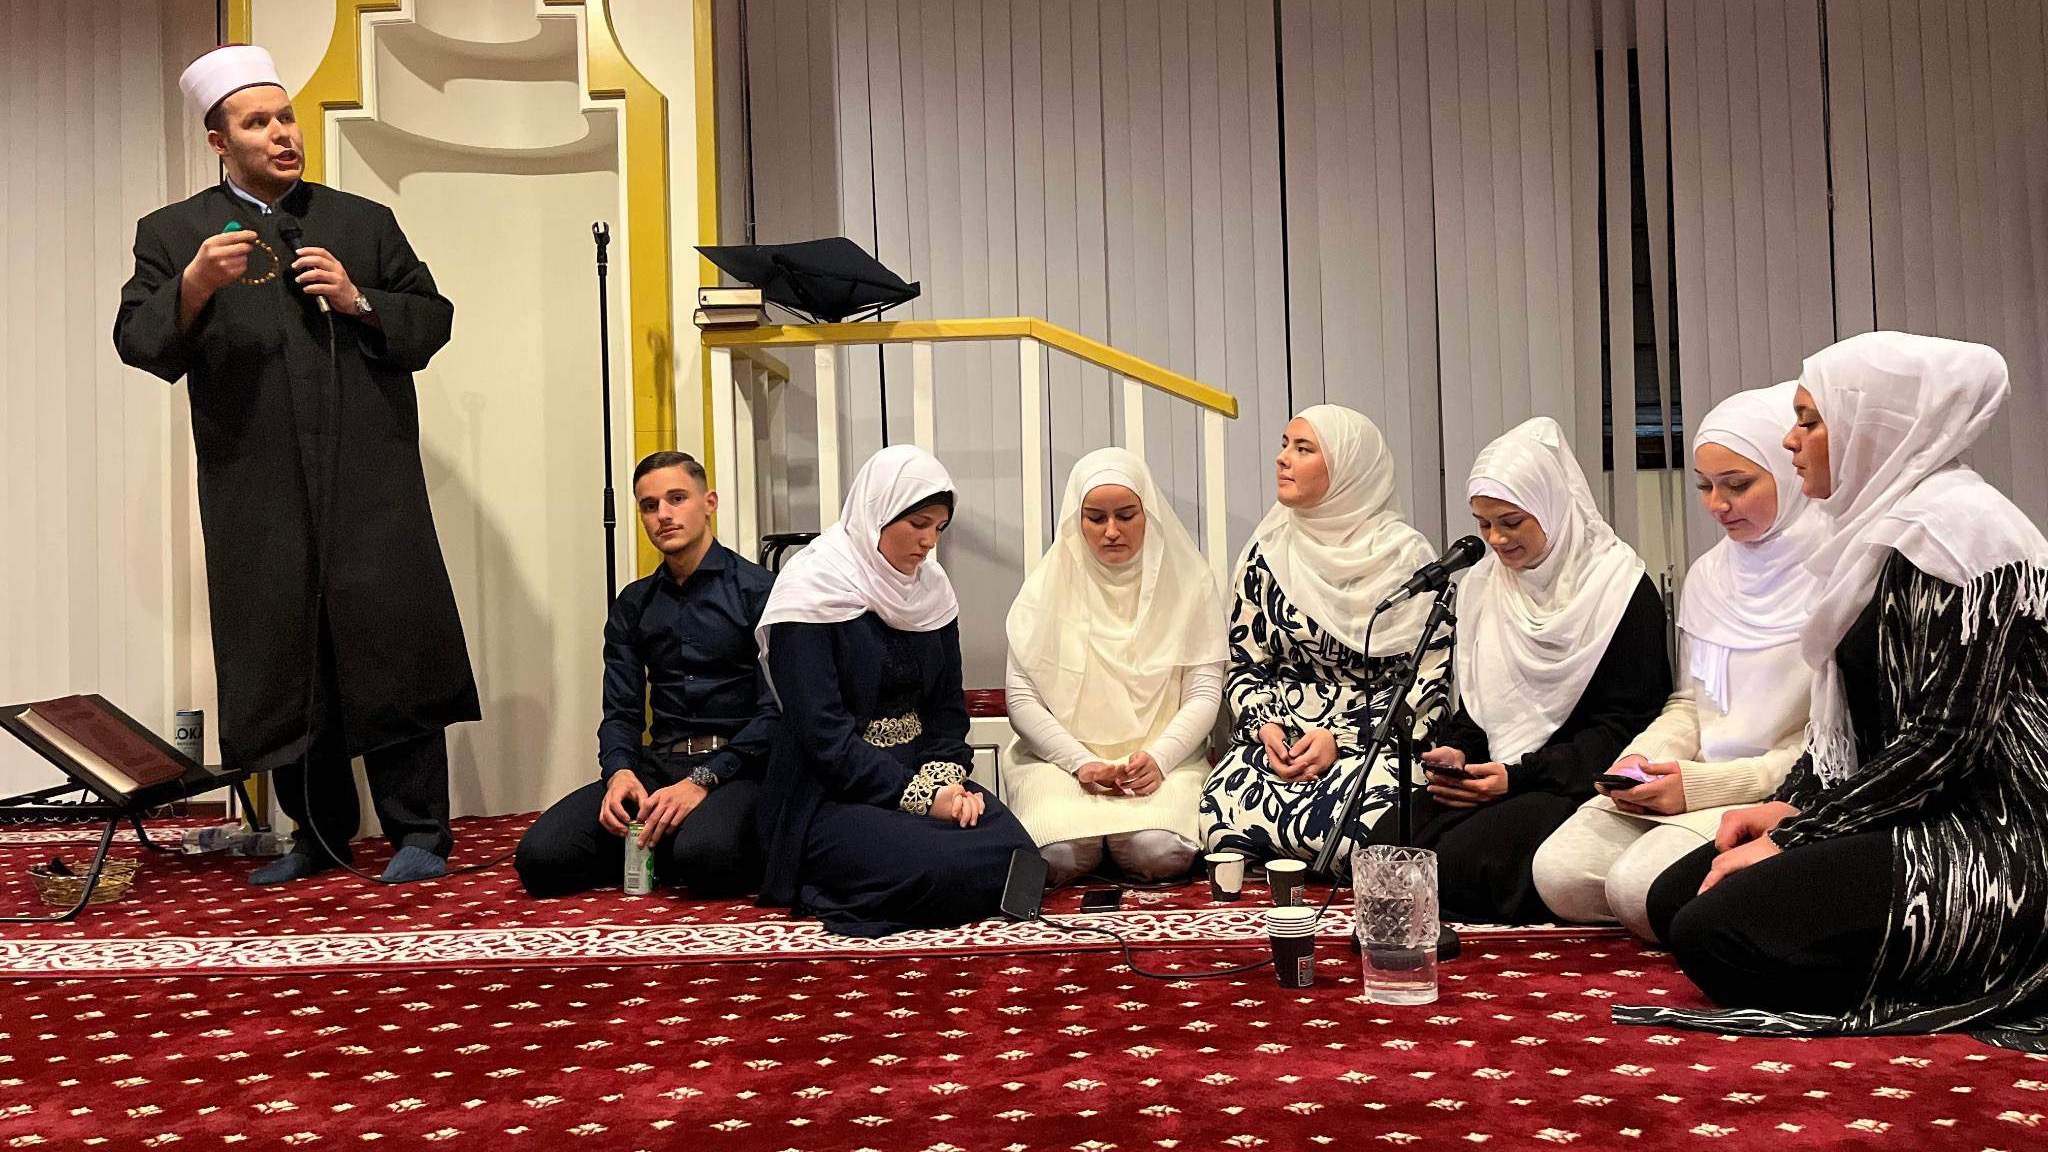 Švedska: Brojne ramazanske aktivnosti u džematu Halmstad